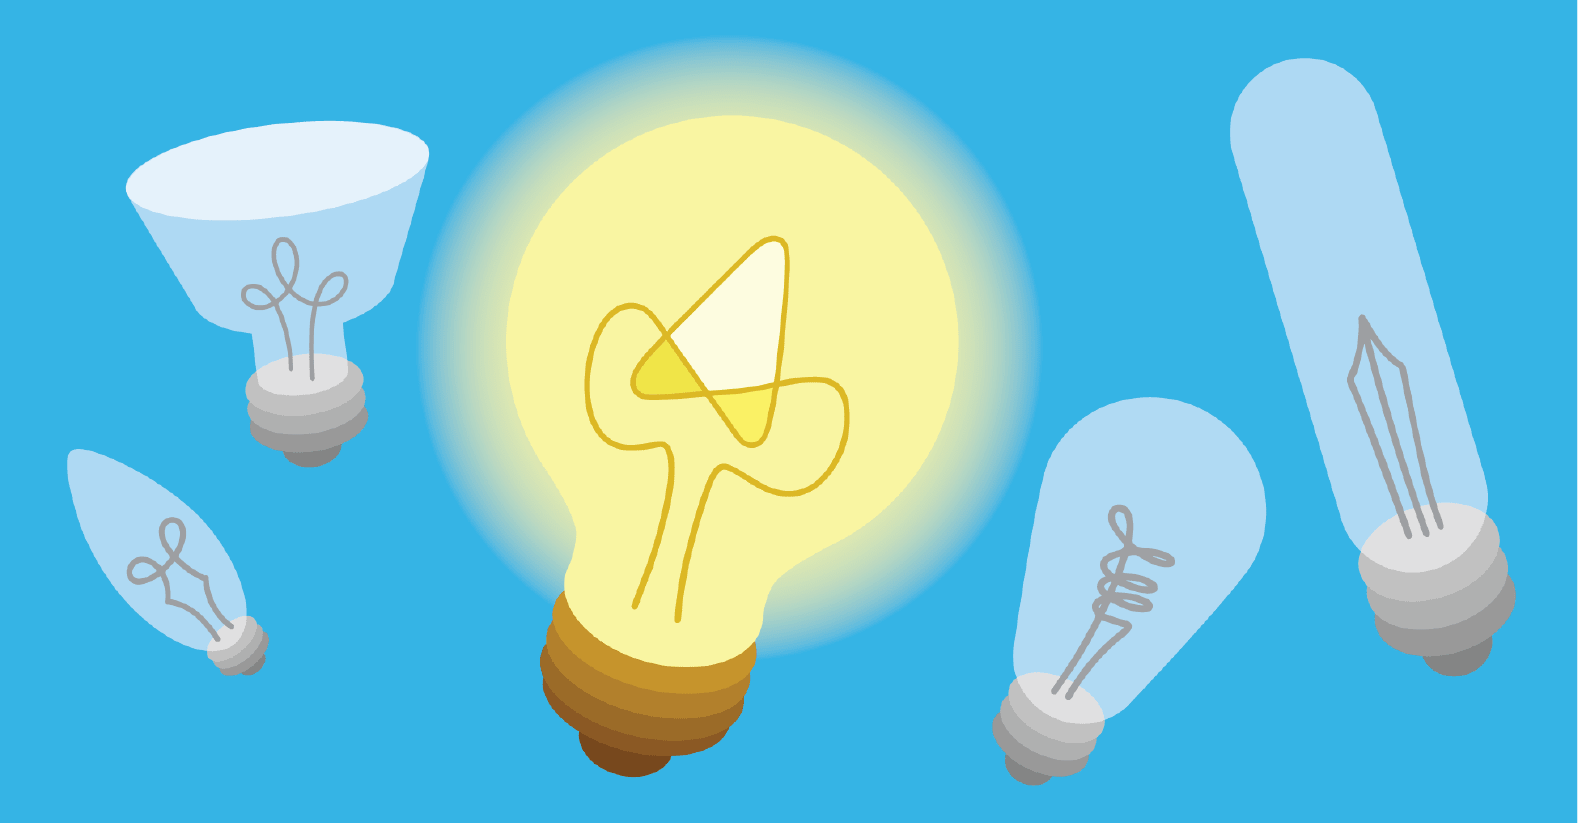 a lit lightbulb surrounded by non-lit lightbulbs